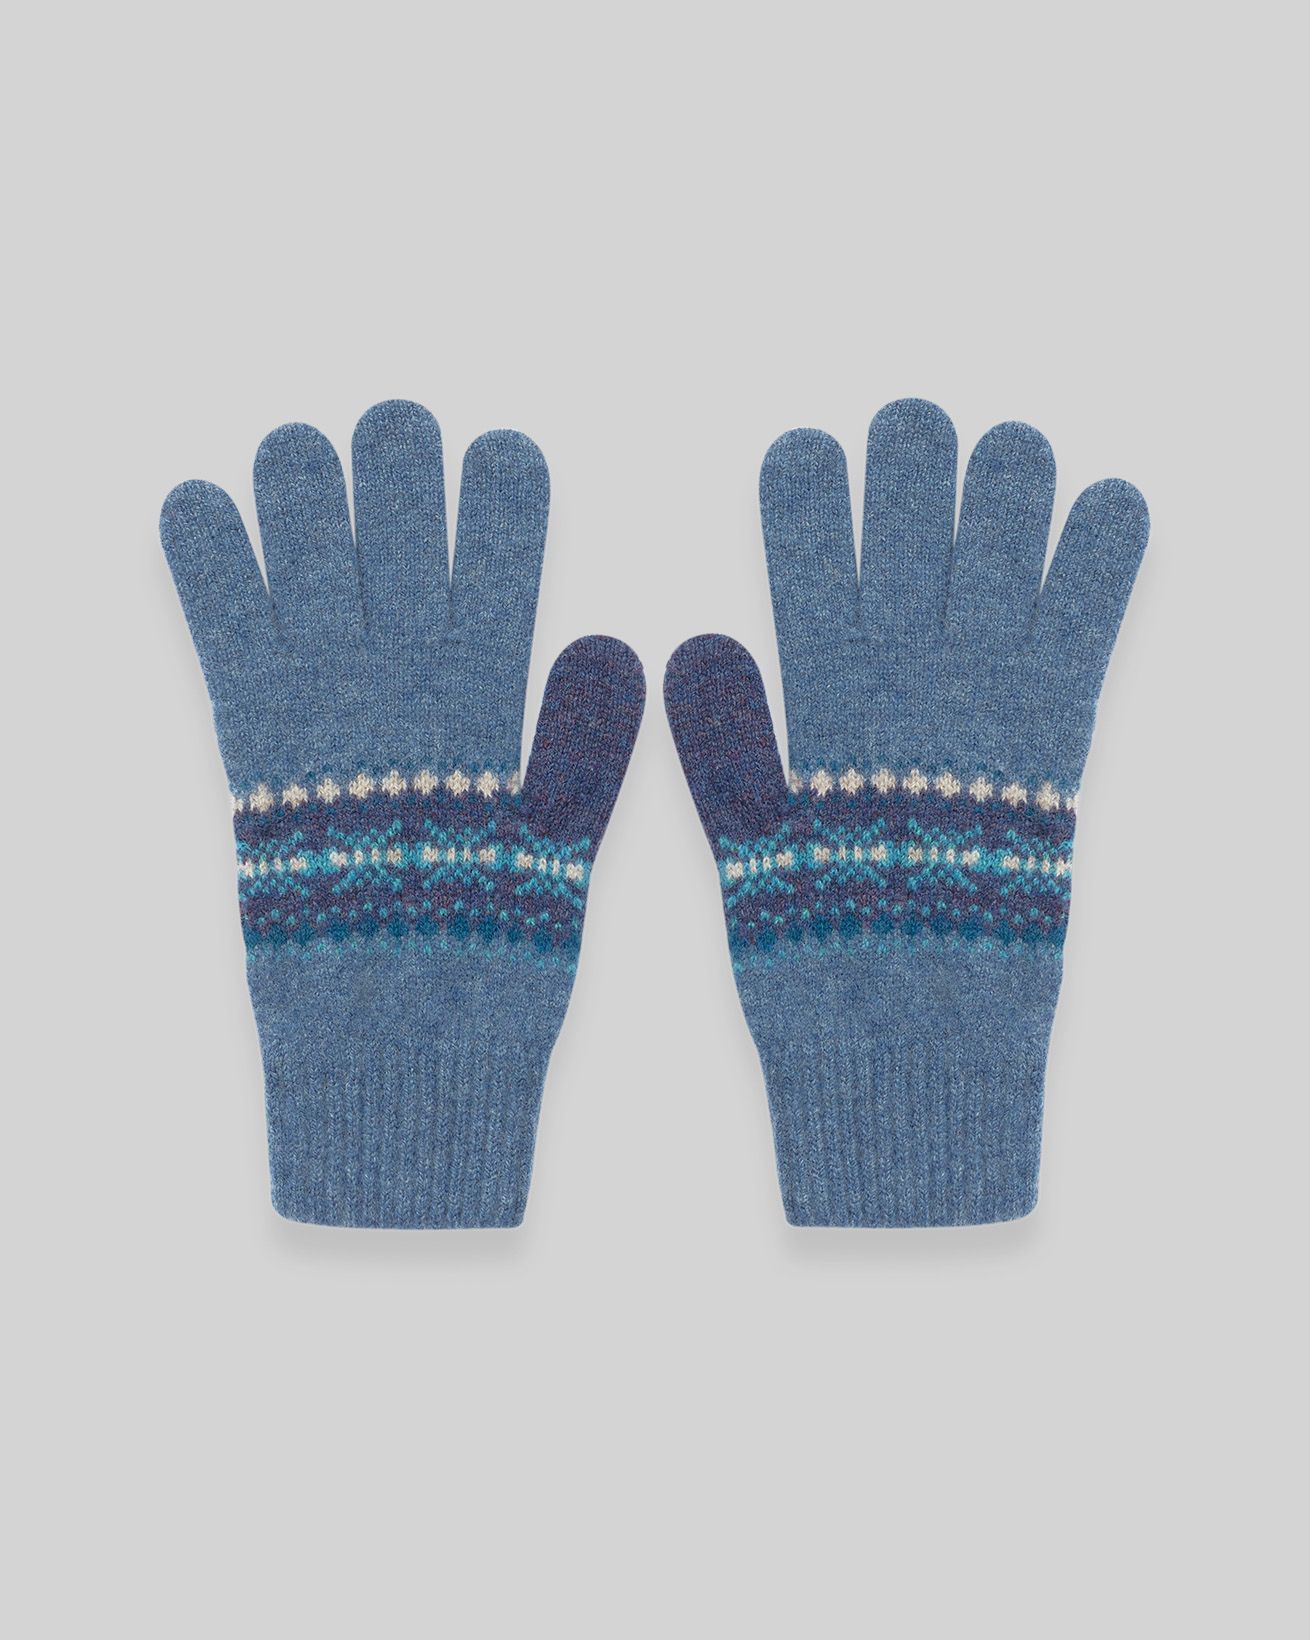 Mitaine homme laine bleu chiné écru gants ecosse celtique clan